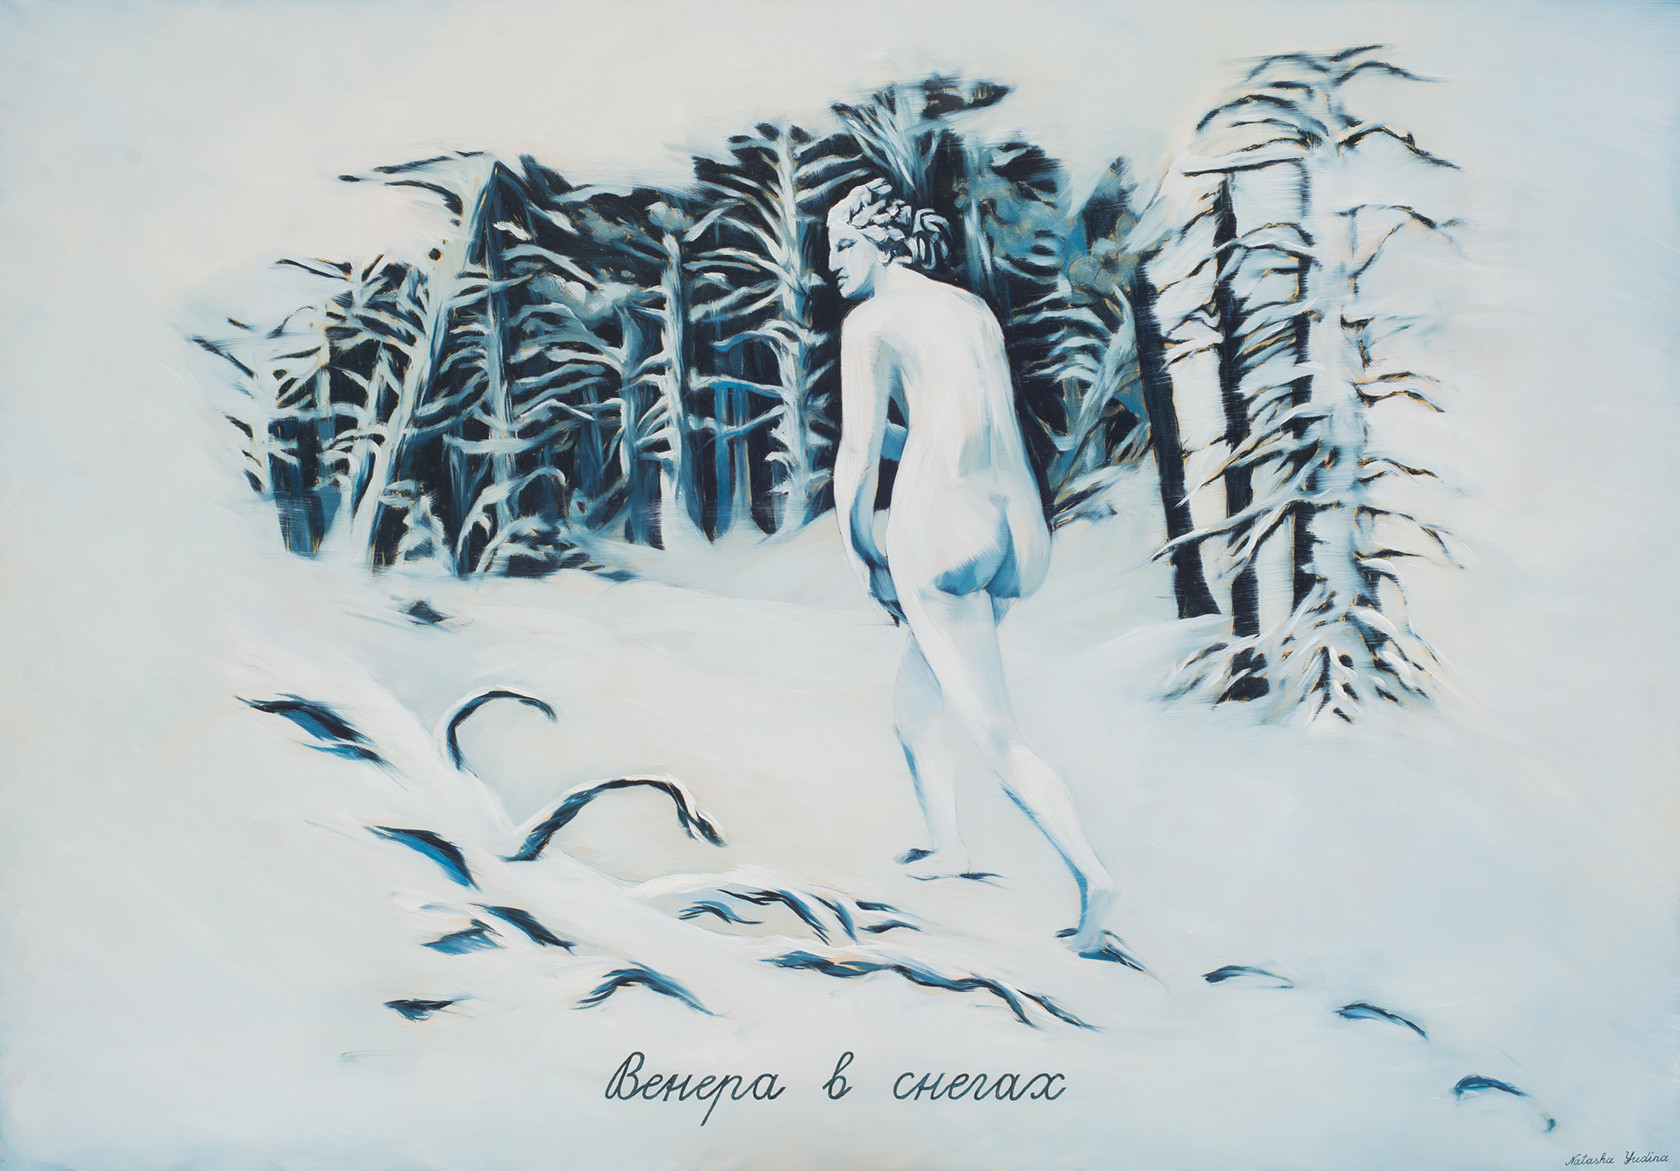 Наташа Юдина, «Венера в&nbsp;снегах» / Томск, 2020 / syg.ma